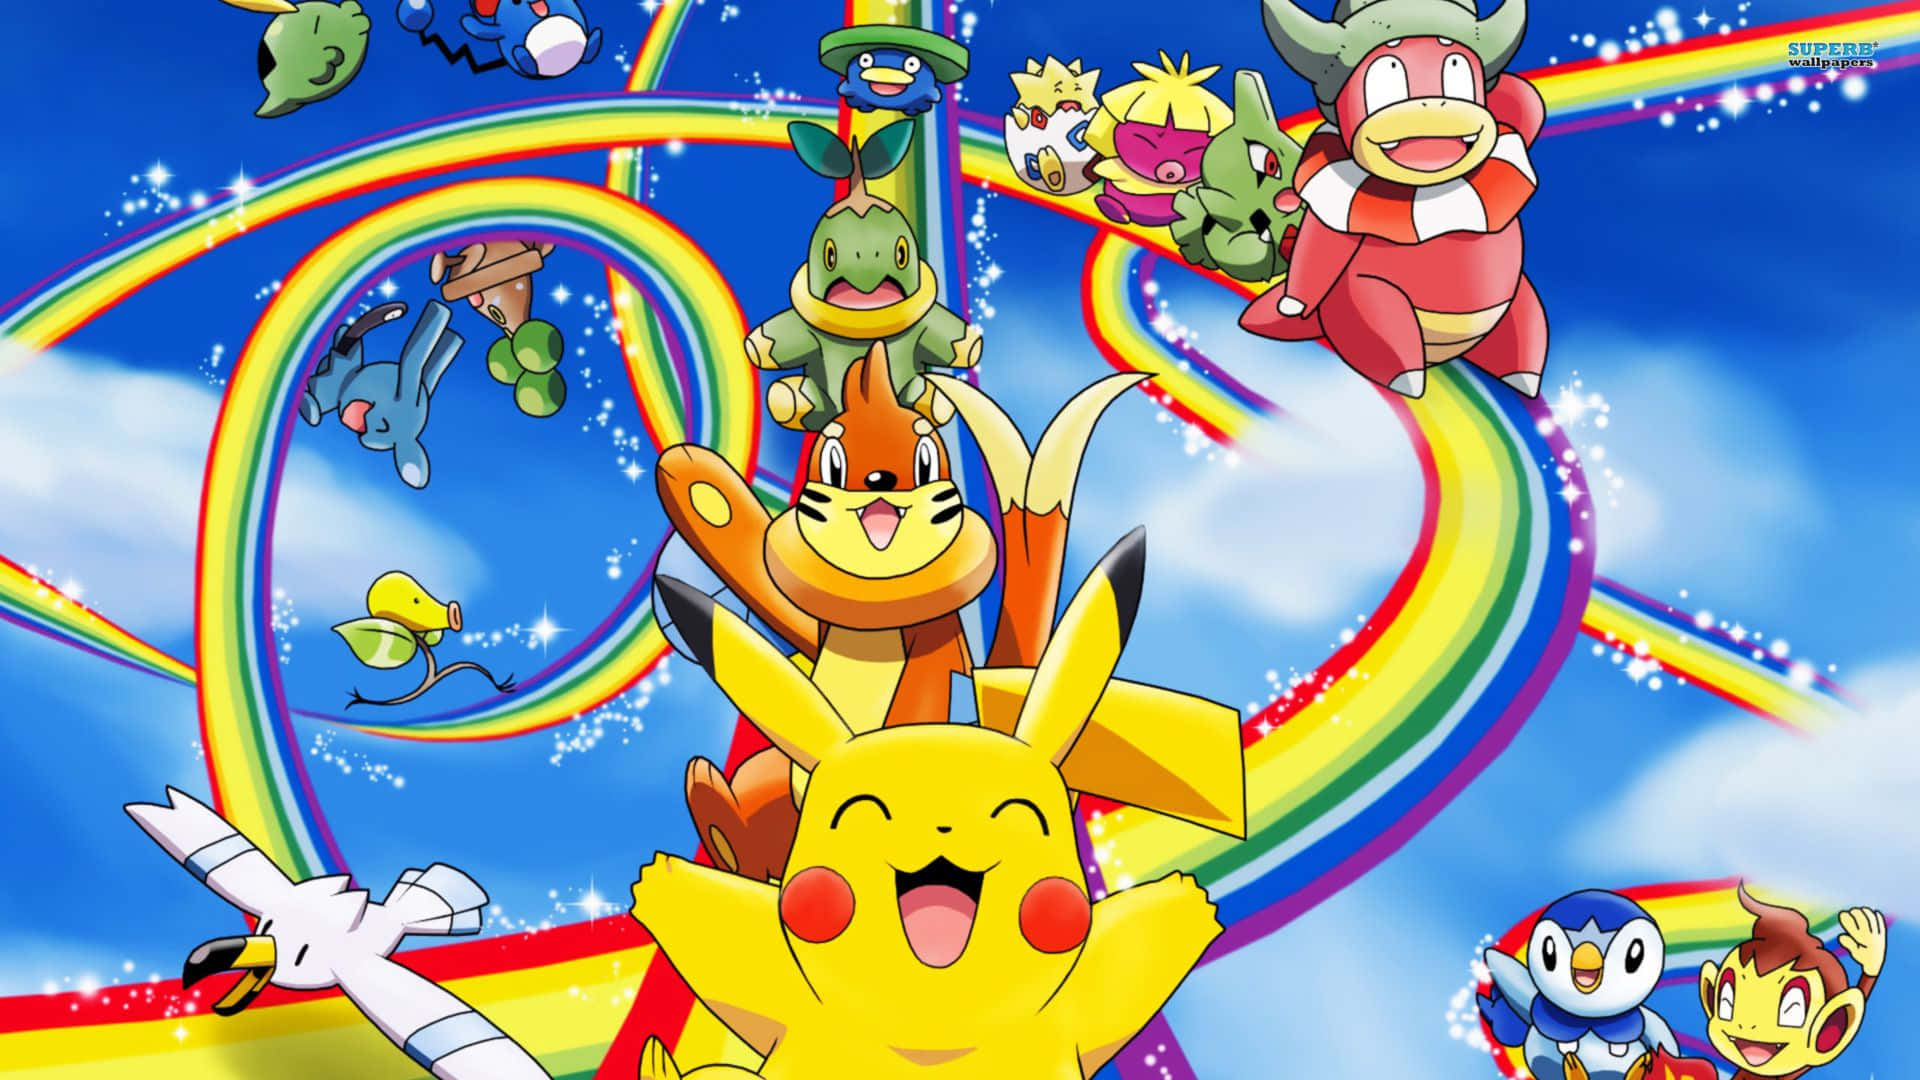 Pokémonjul-pikachu Och Vänner I Regnbågsrutschkanan. Wallpaper